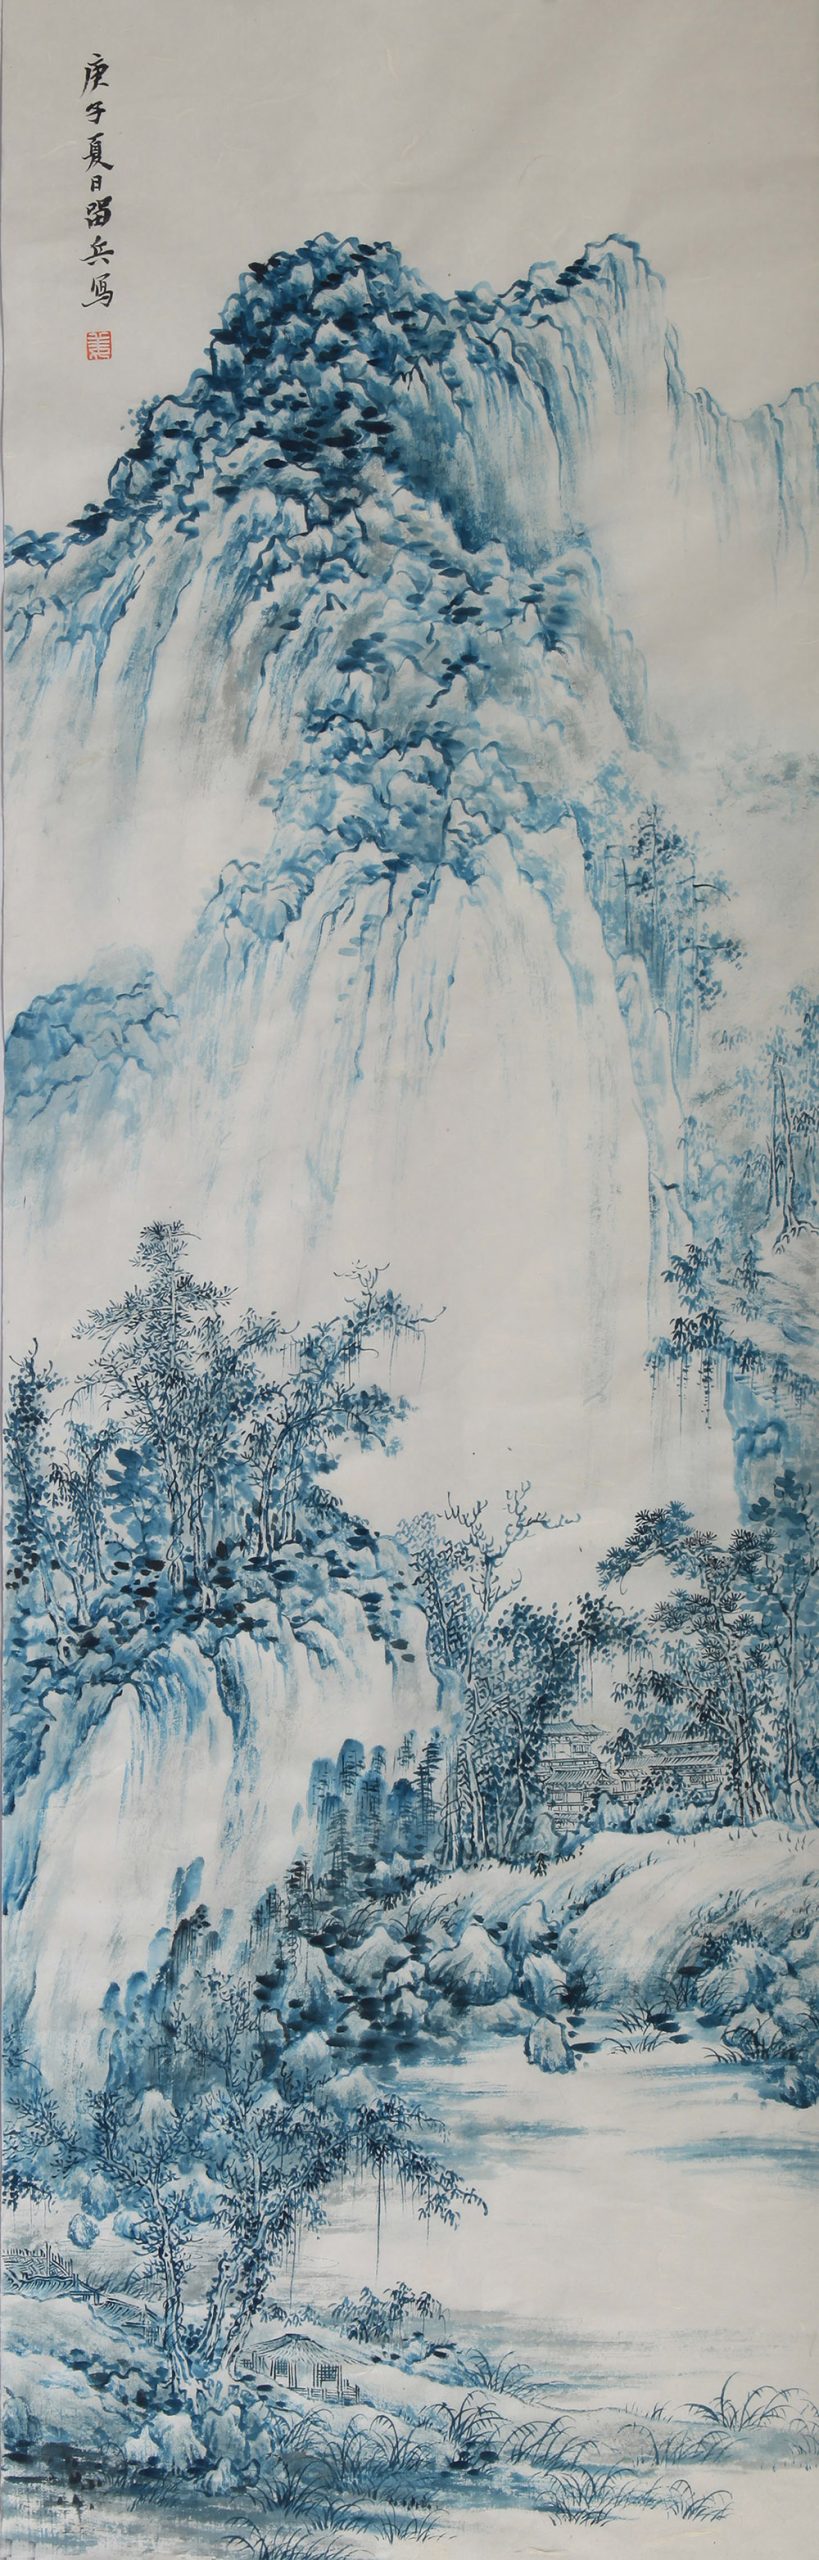 Cyan World, Liubing Jiang - Exquisite Art